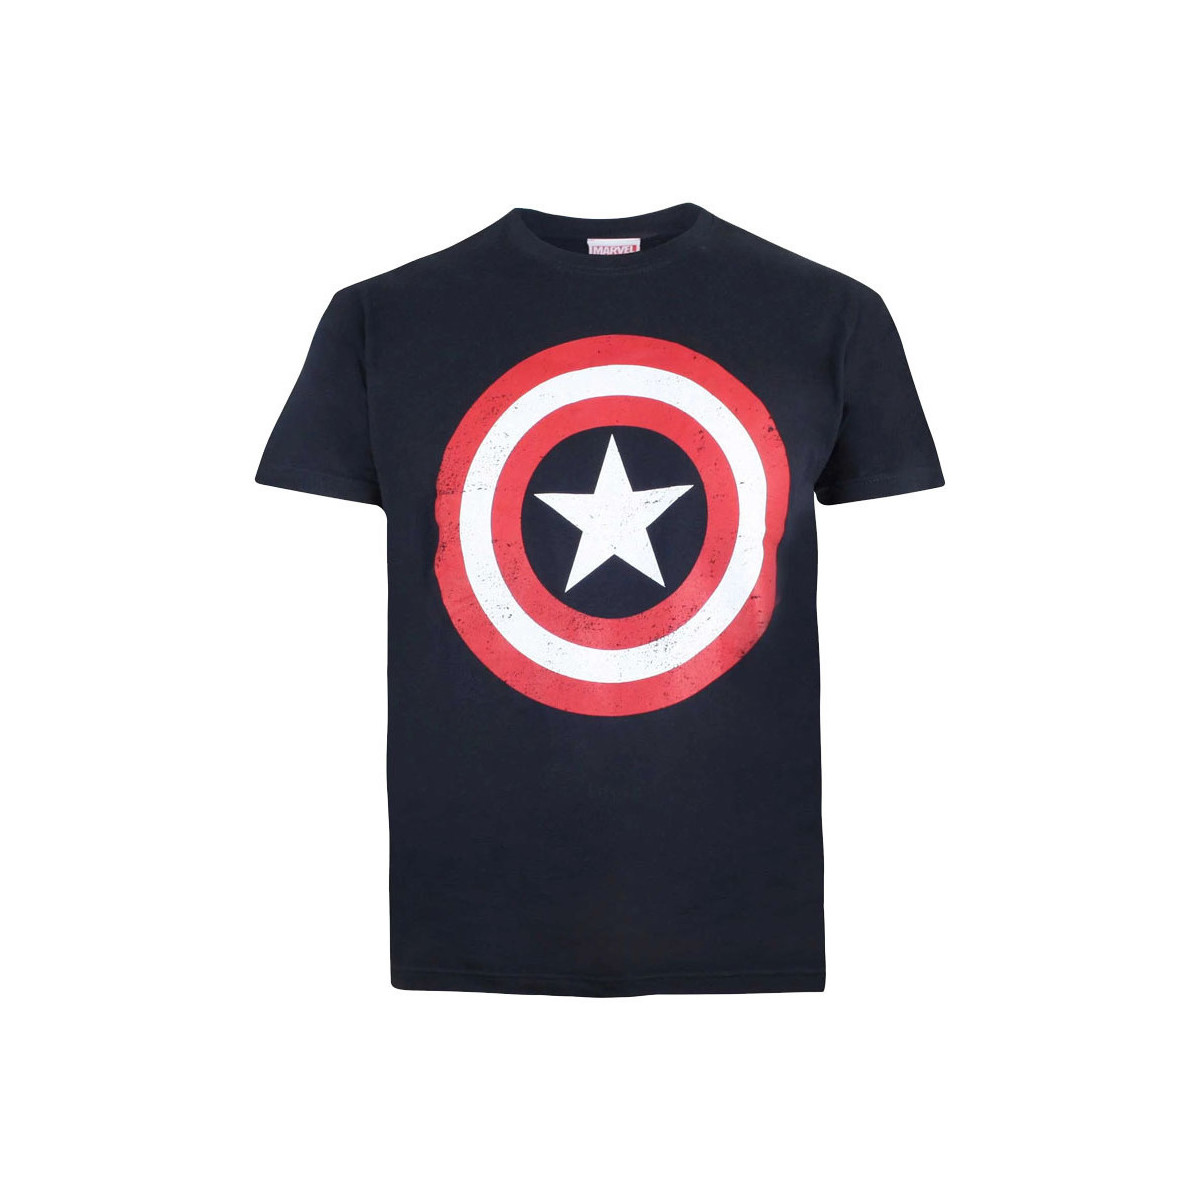 Vêtements Garçon T-shirts manches courtes Captain America TV229 Rouge